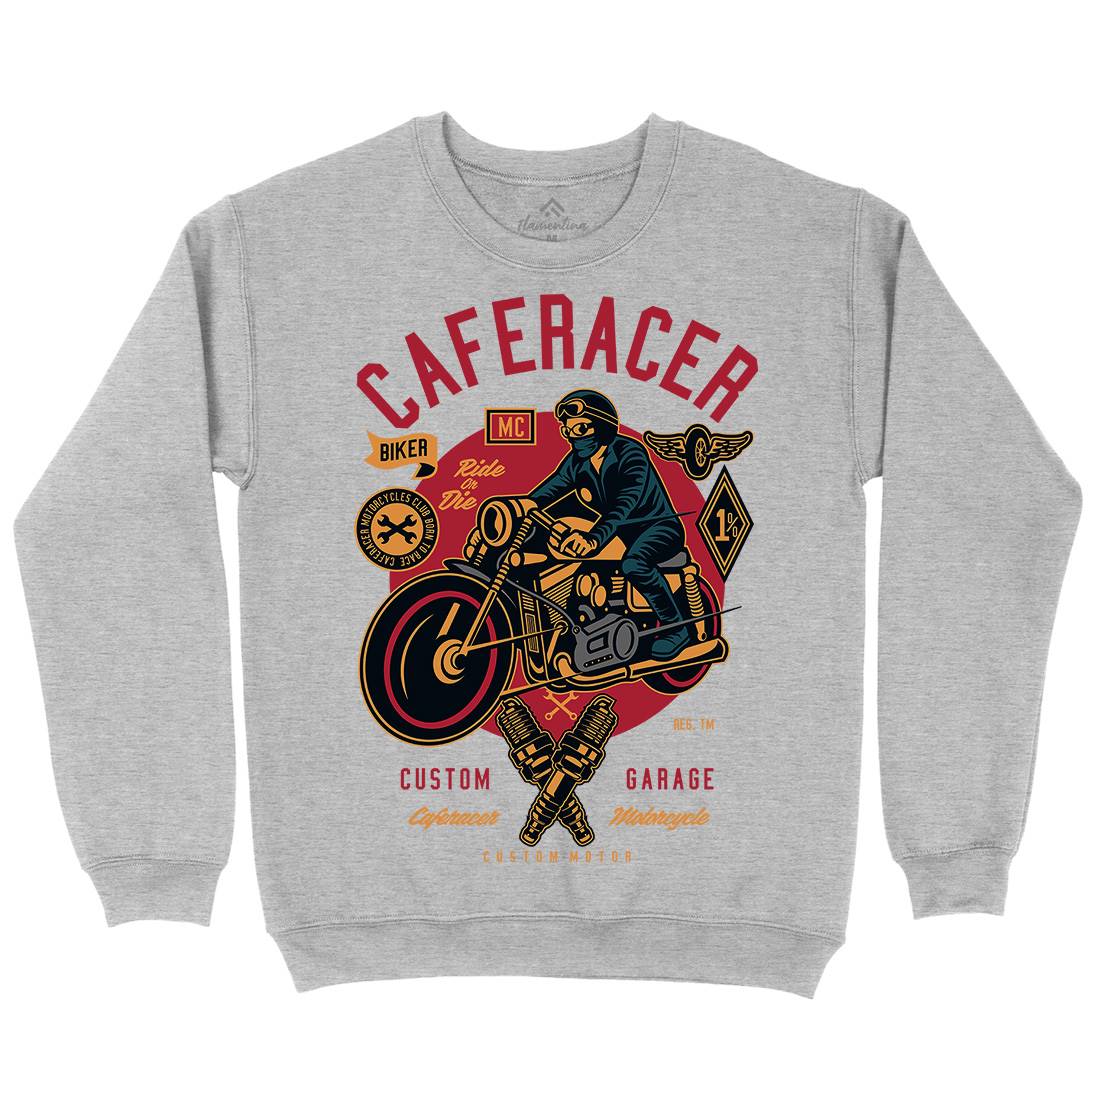 Caferacer Kids Crew Neck Sweatshirt Motorcycles D513